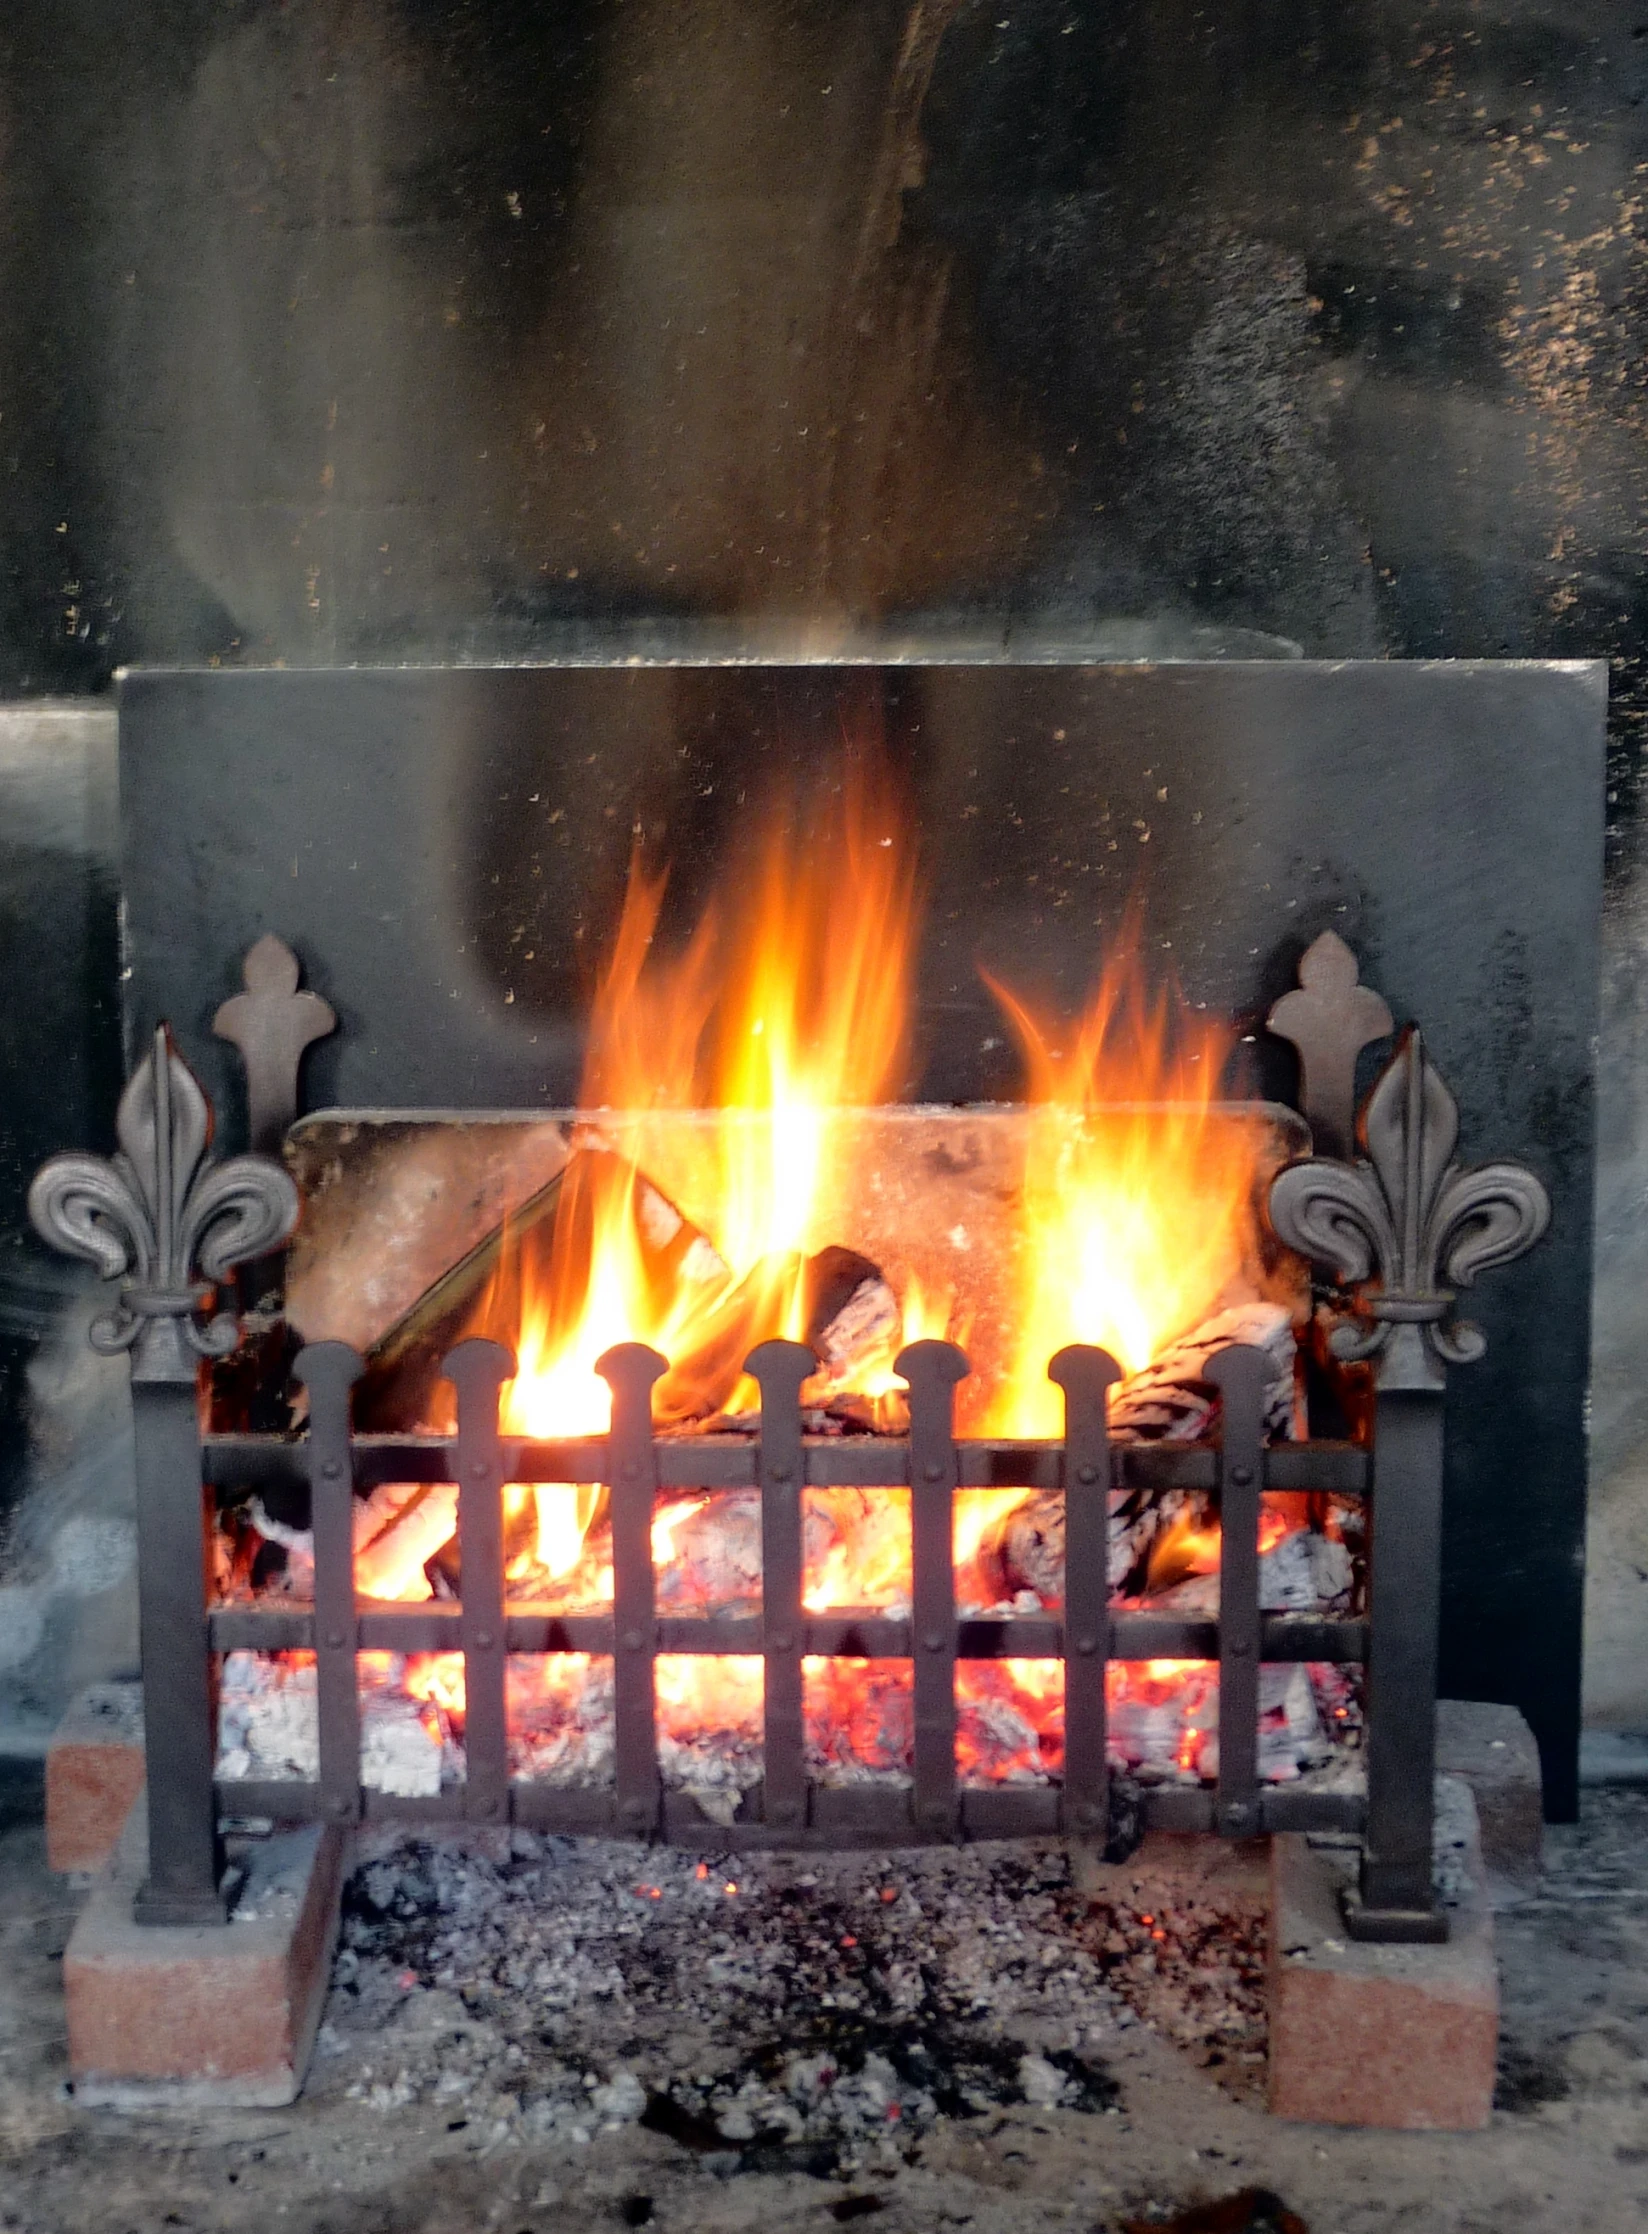 a fire burning inside of an open fireplace